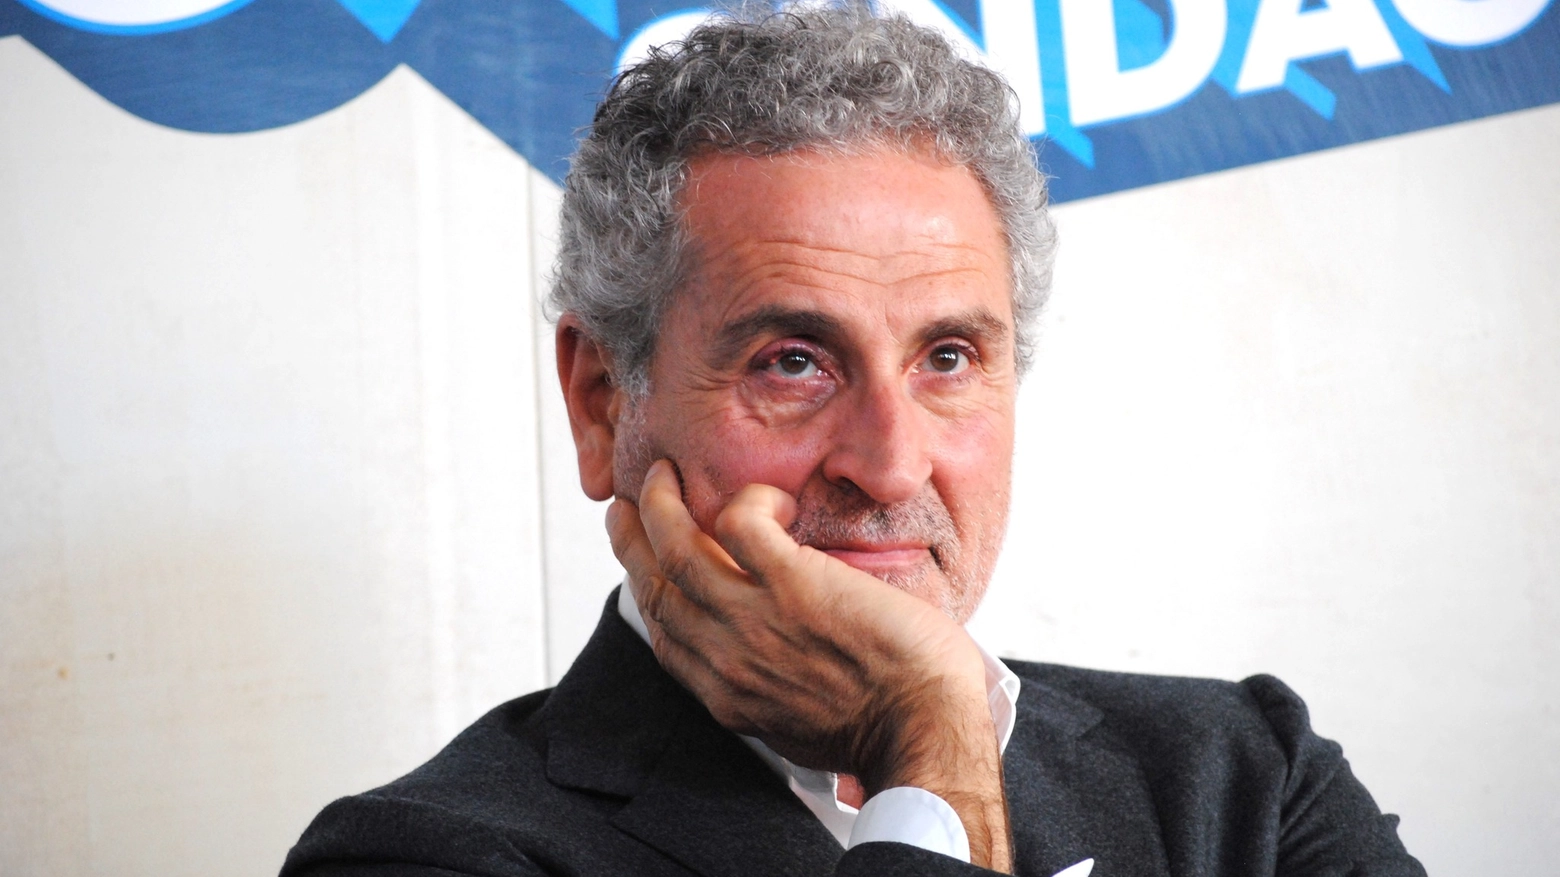 Il candidato a sindaco per il centrosinistra a Bari, Michele Laforgia